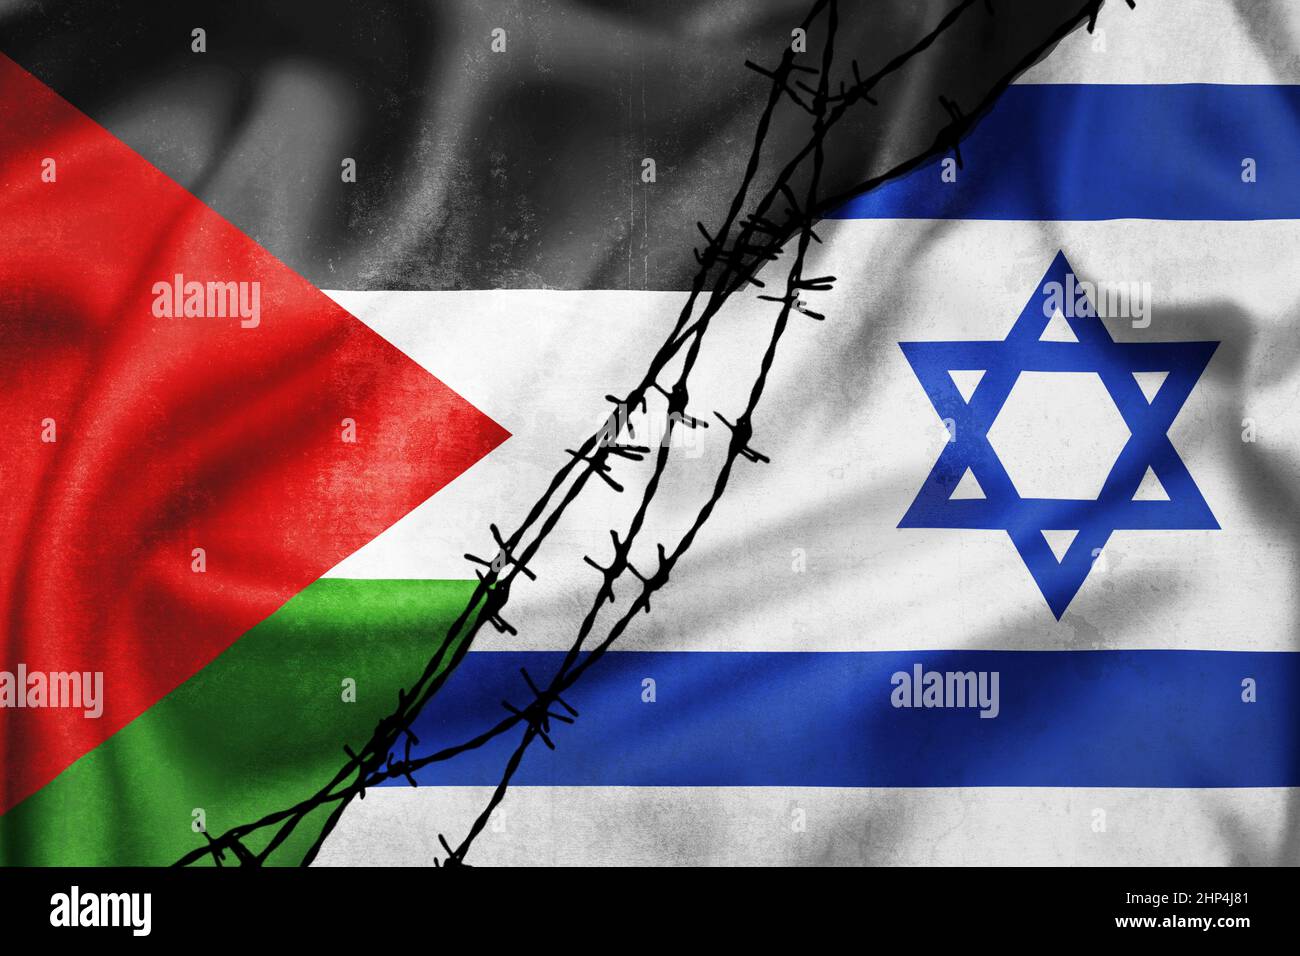 Grunge drapeaux de la Palestine et d'Israël divisé par l'illustration barbelée, concept de relations tendues entre la Palestine et Israël Banque D'Images